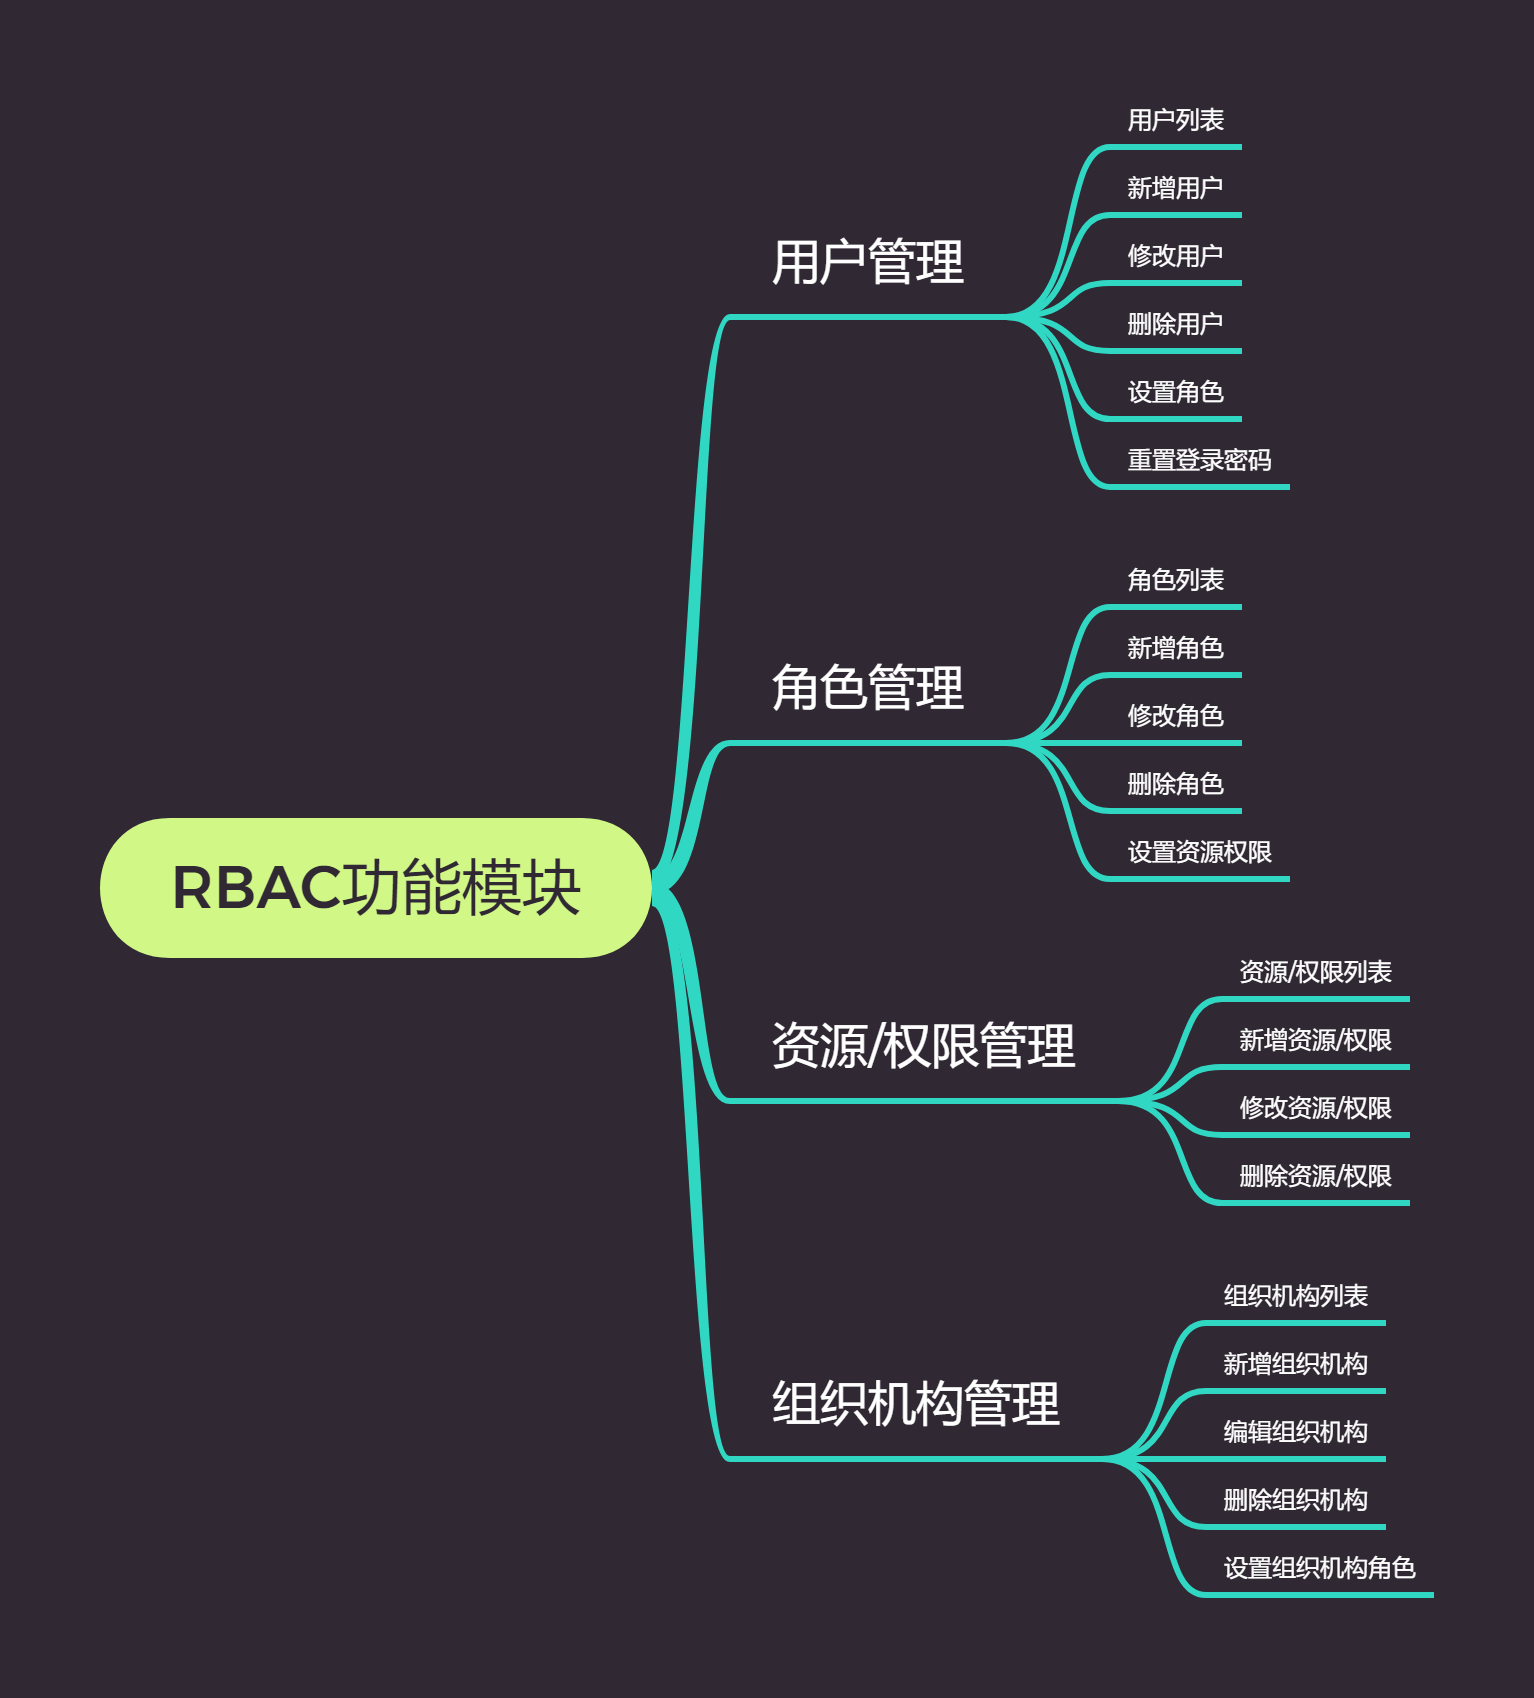 RBAC功能模块